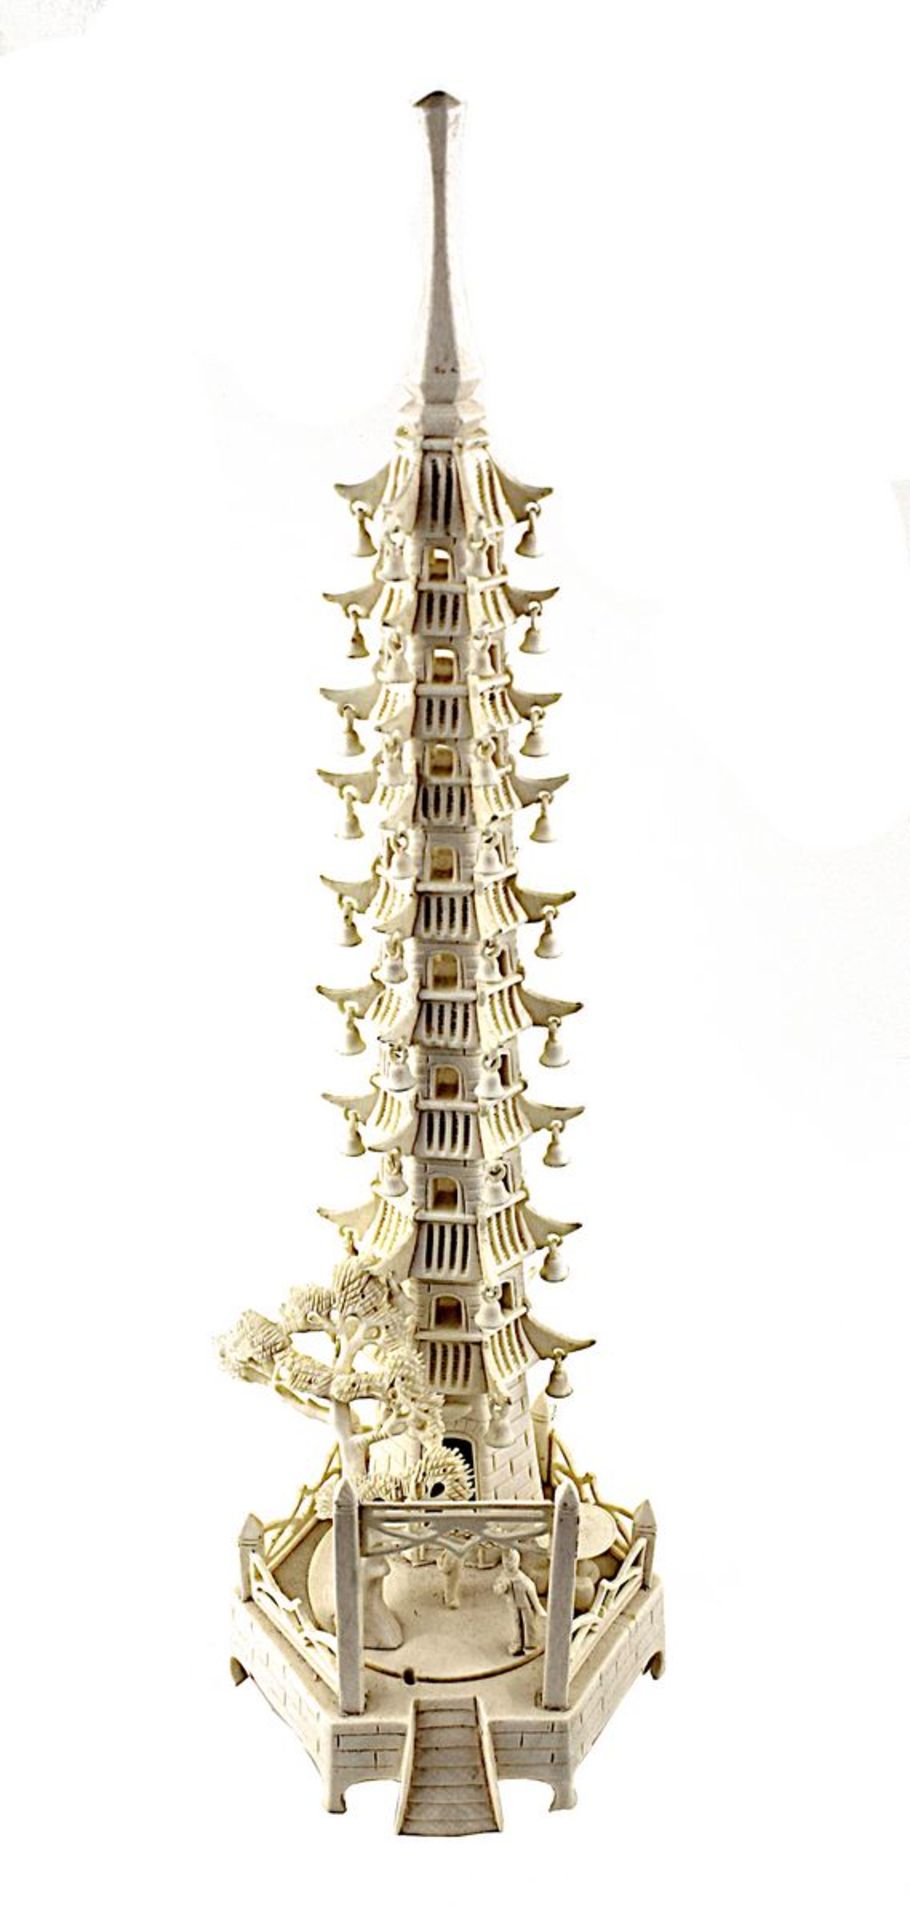 Chinesische Elfenbeinschnitzerei in Form einer Pagode mit Glöckchen, Baum und kleinen Figuren auf